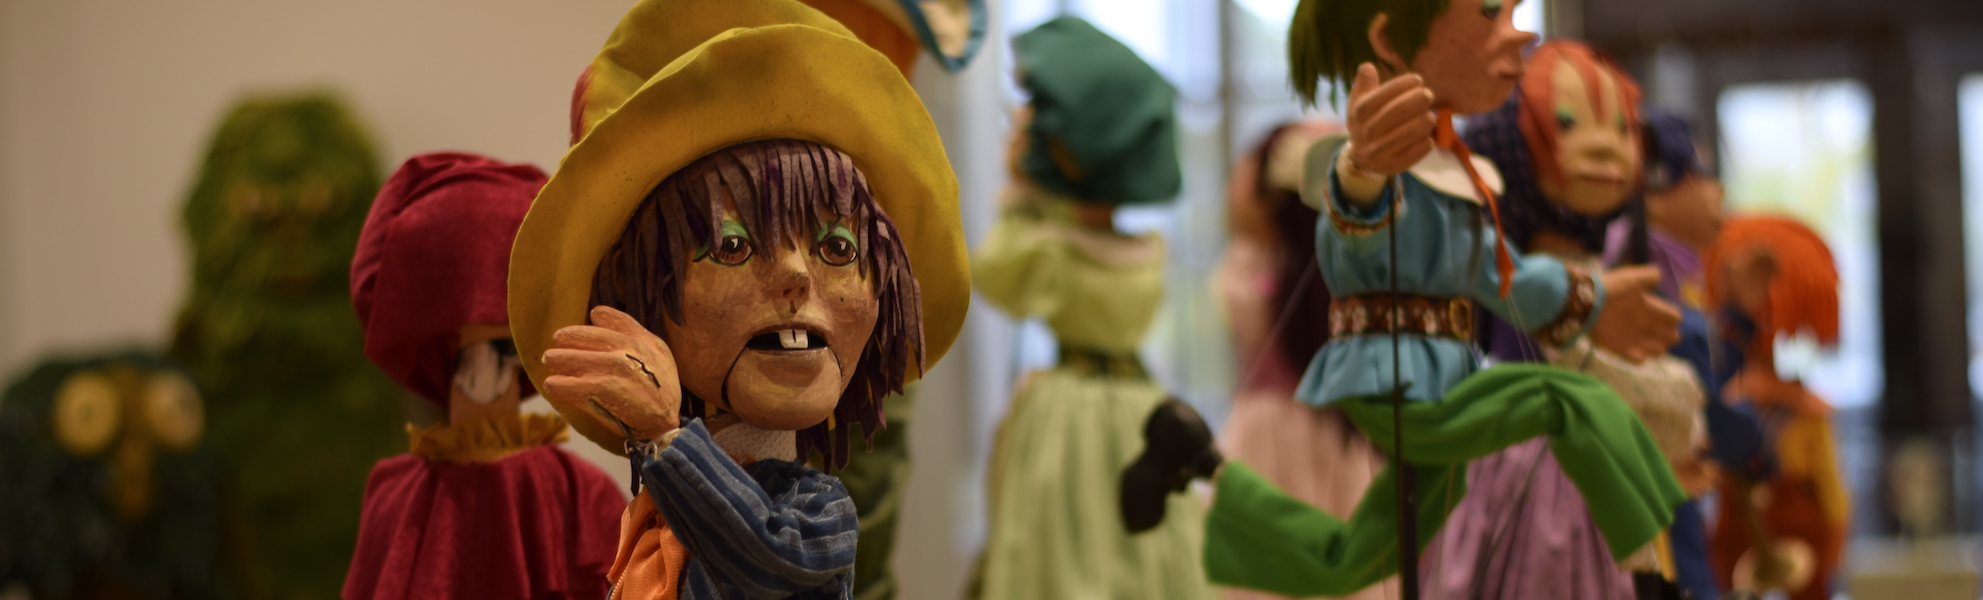 Puppets by Frank Ballard